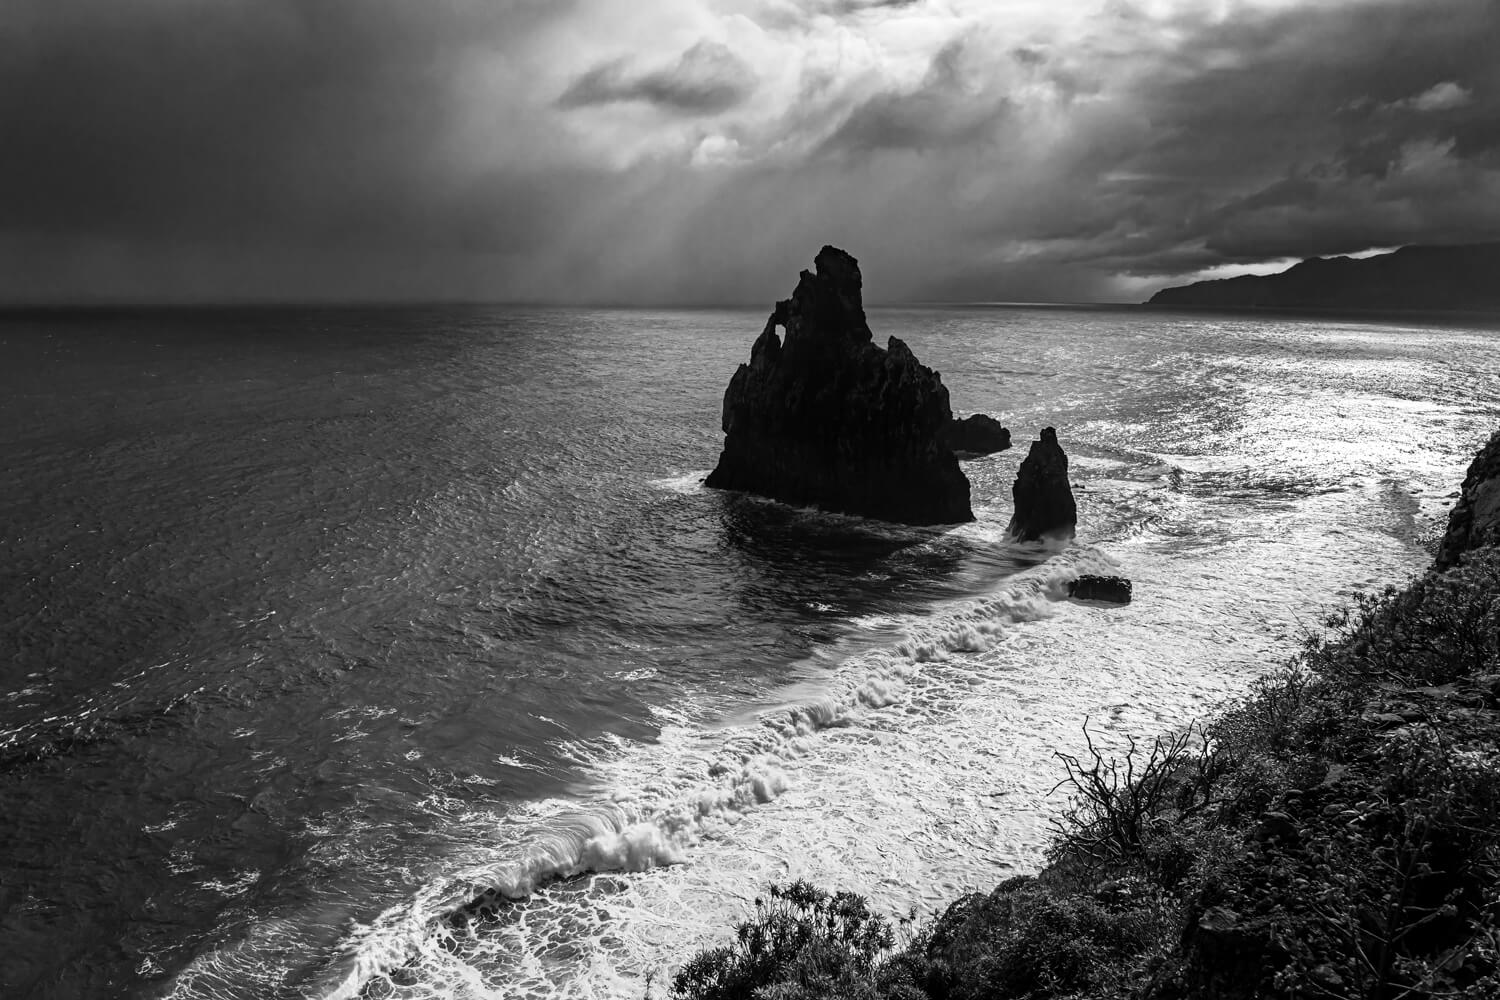 Ilhéu da Ribeira da Janela sous l'orage, Madeira